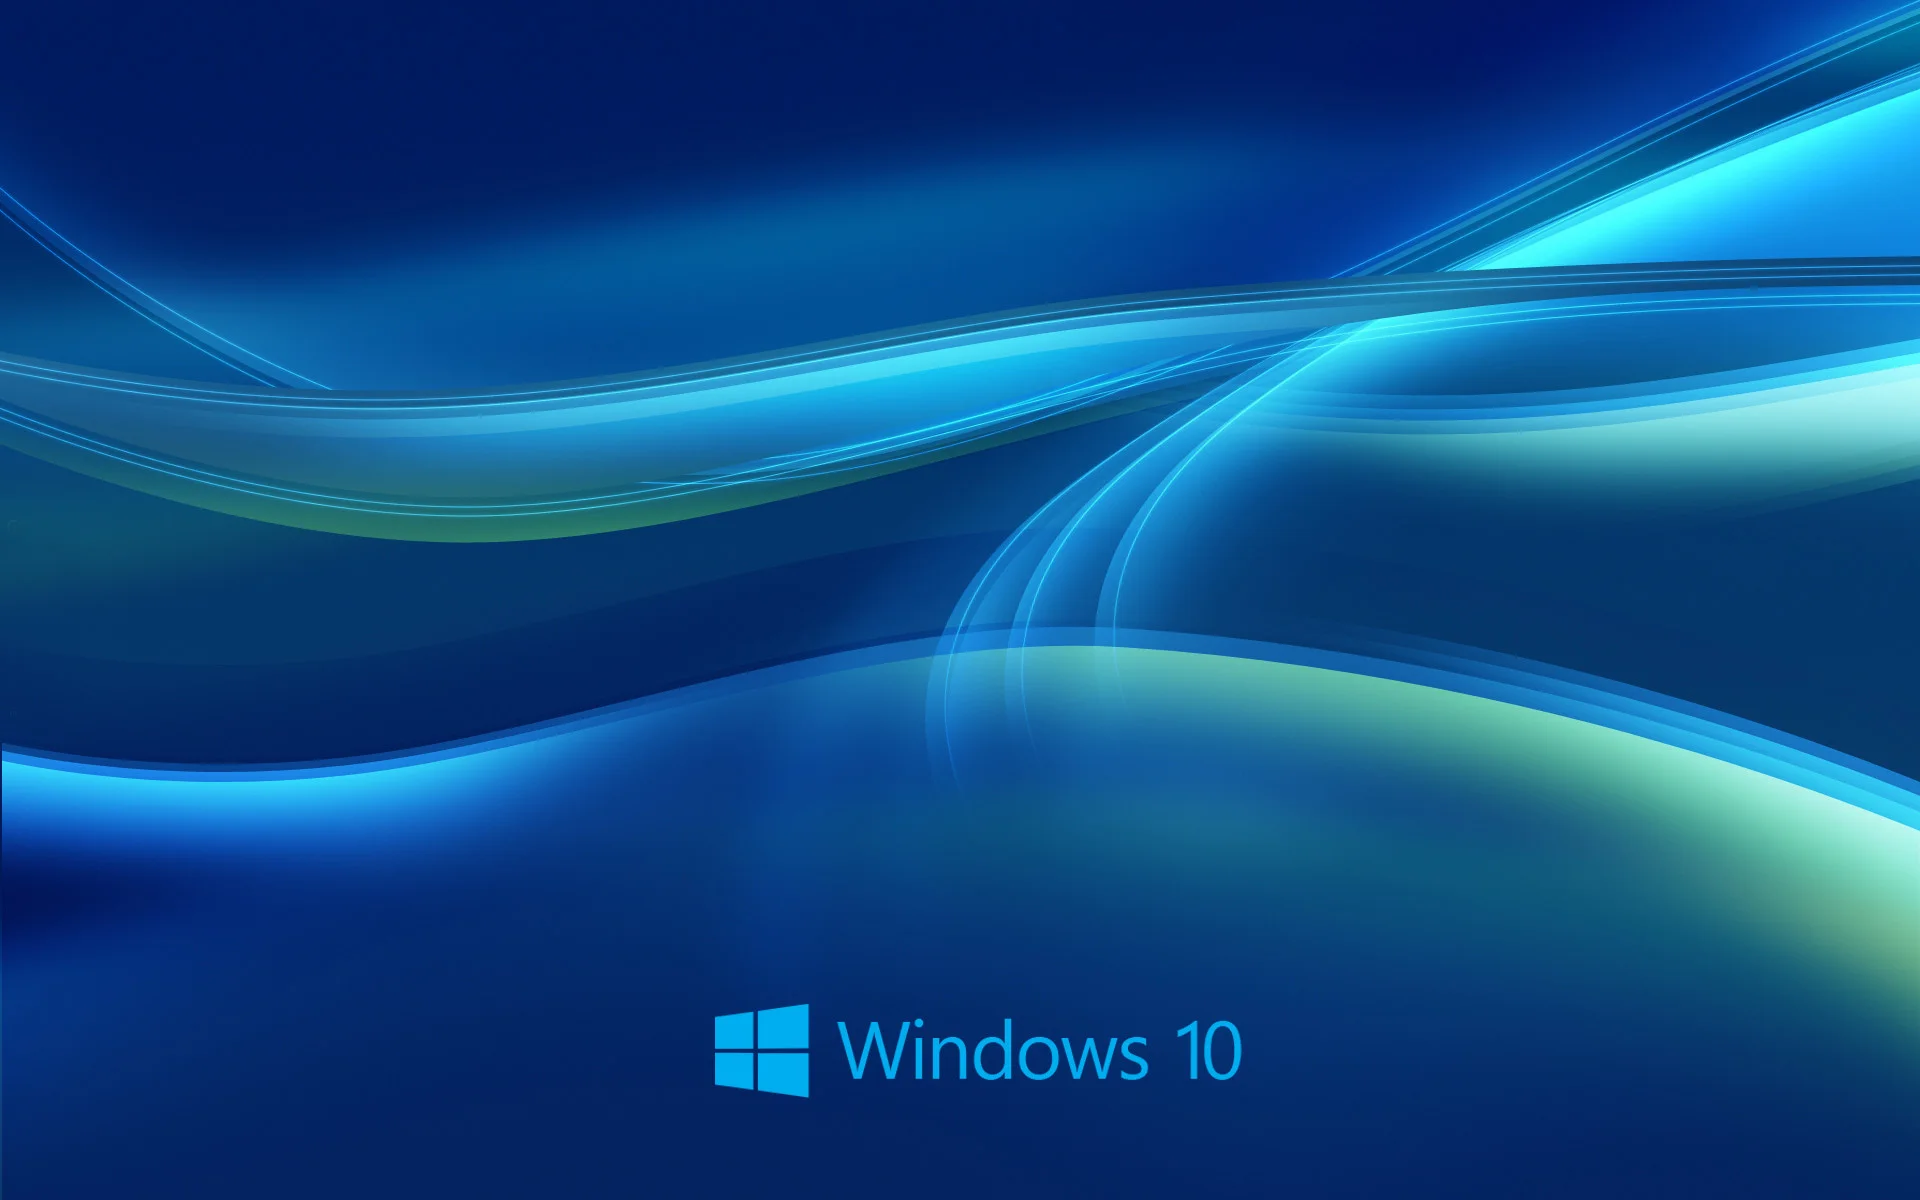 Với hình nền động 3D Windows 10, bạn sẽ được đắm chìm trong không gian sống động chỉ bằng một cú nhấp chuột. Đây chắc chắn là một trải nghiệm độc đáo mà bạn không nên bỏ lỡ. Hãy xem ngay để khám phá nhiều hình nền động thú vị nhé!